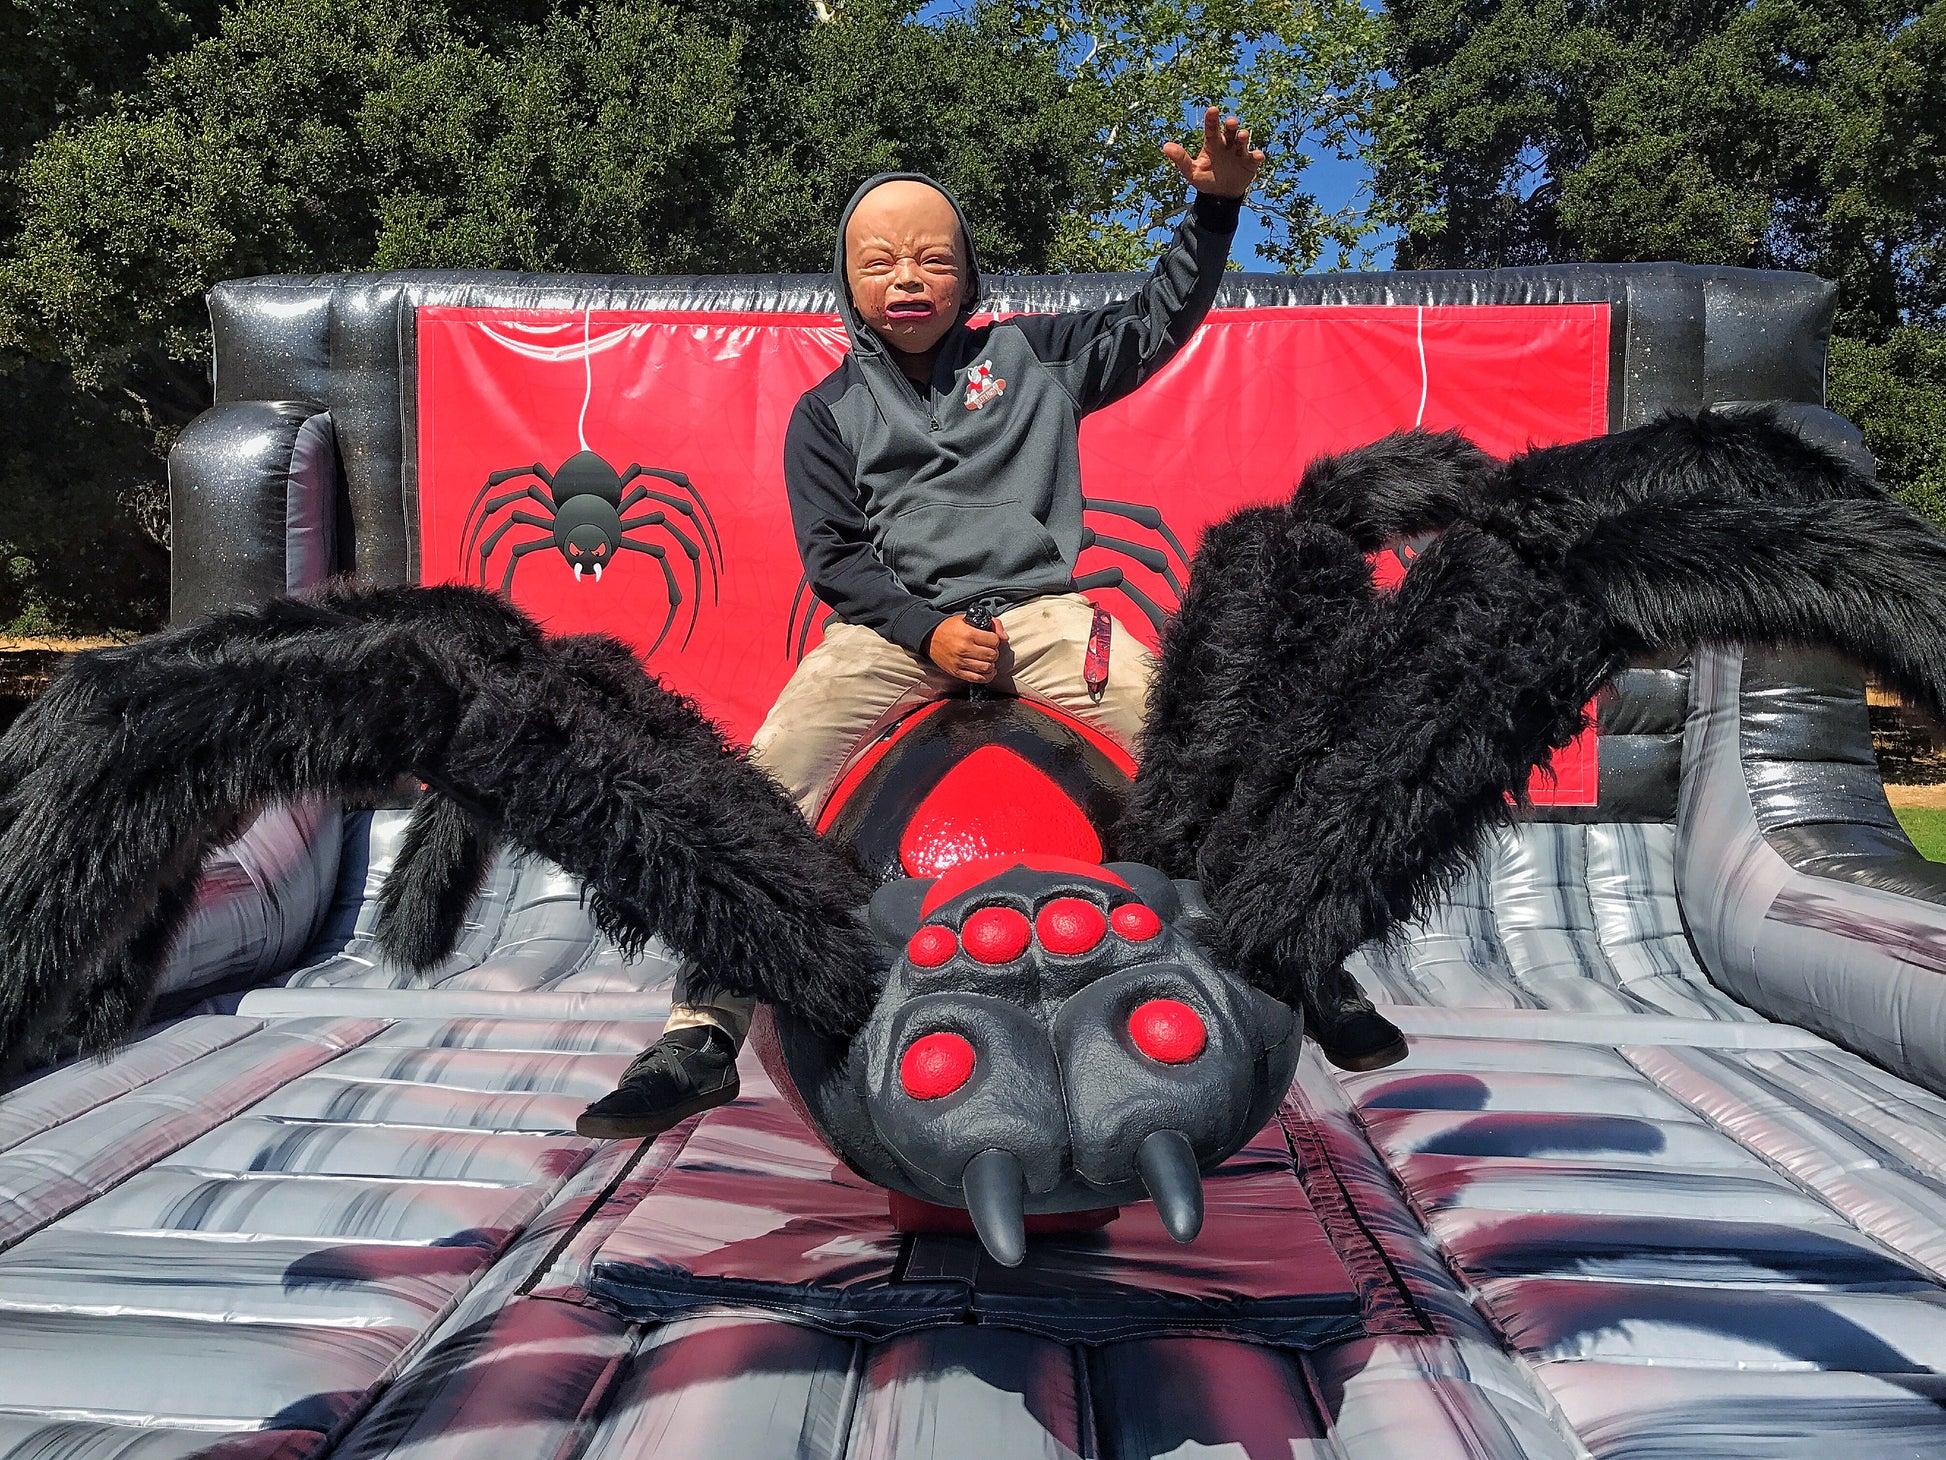 Mechanical Black Widow Spider Ride